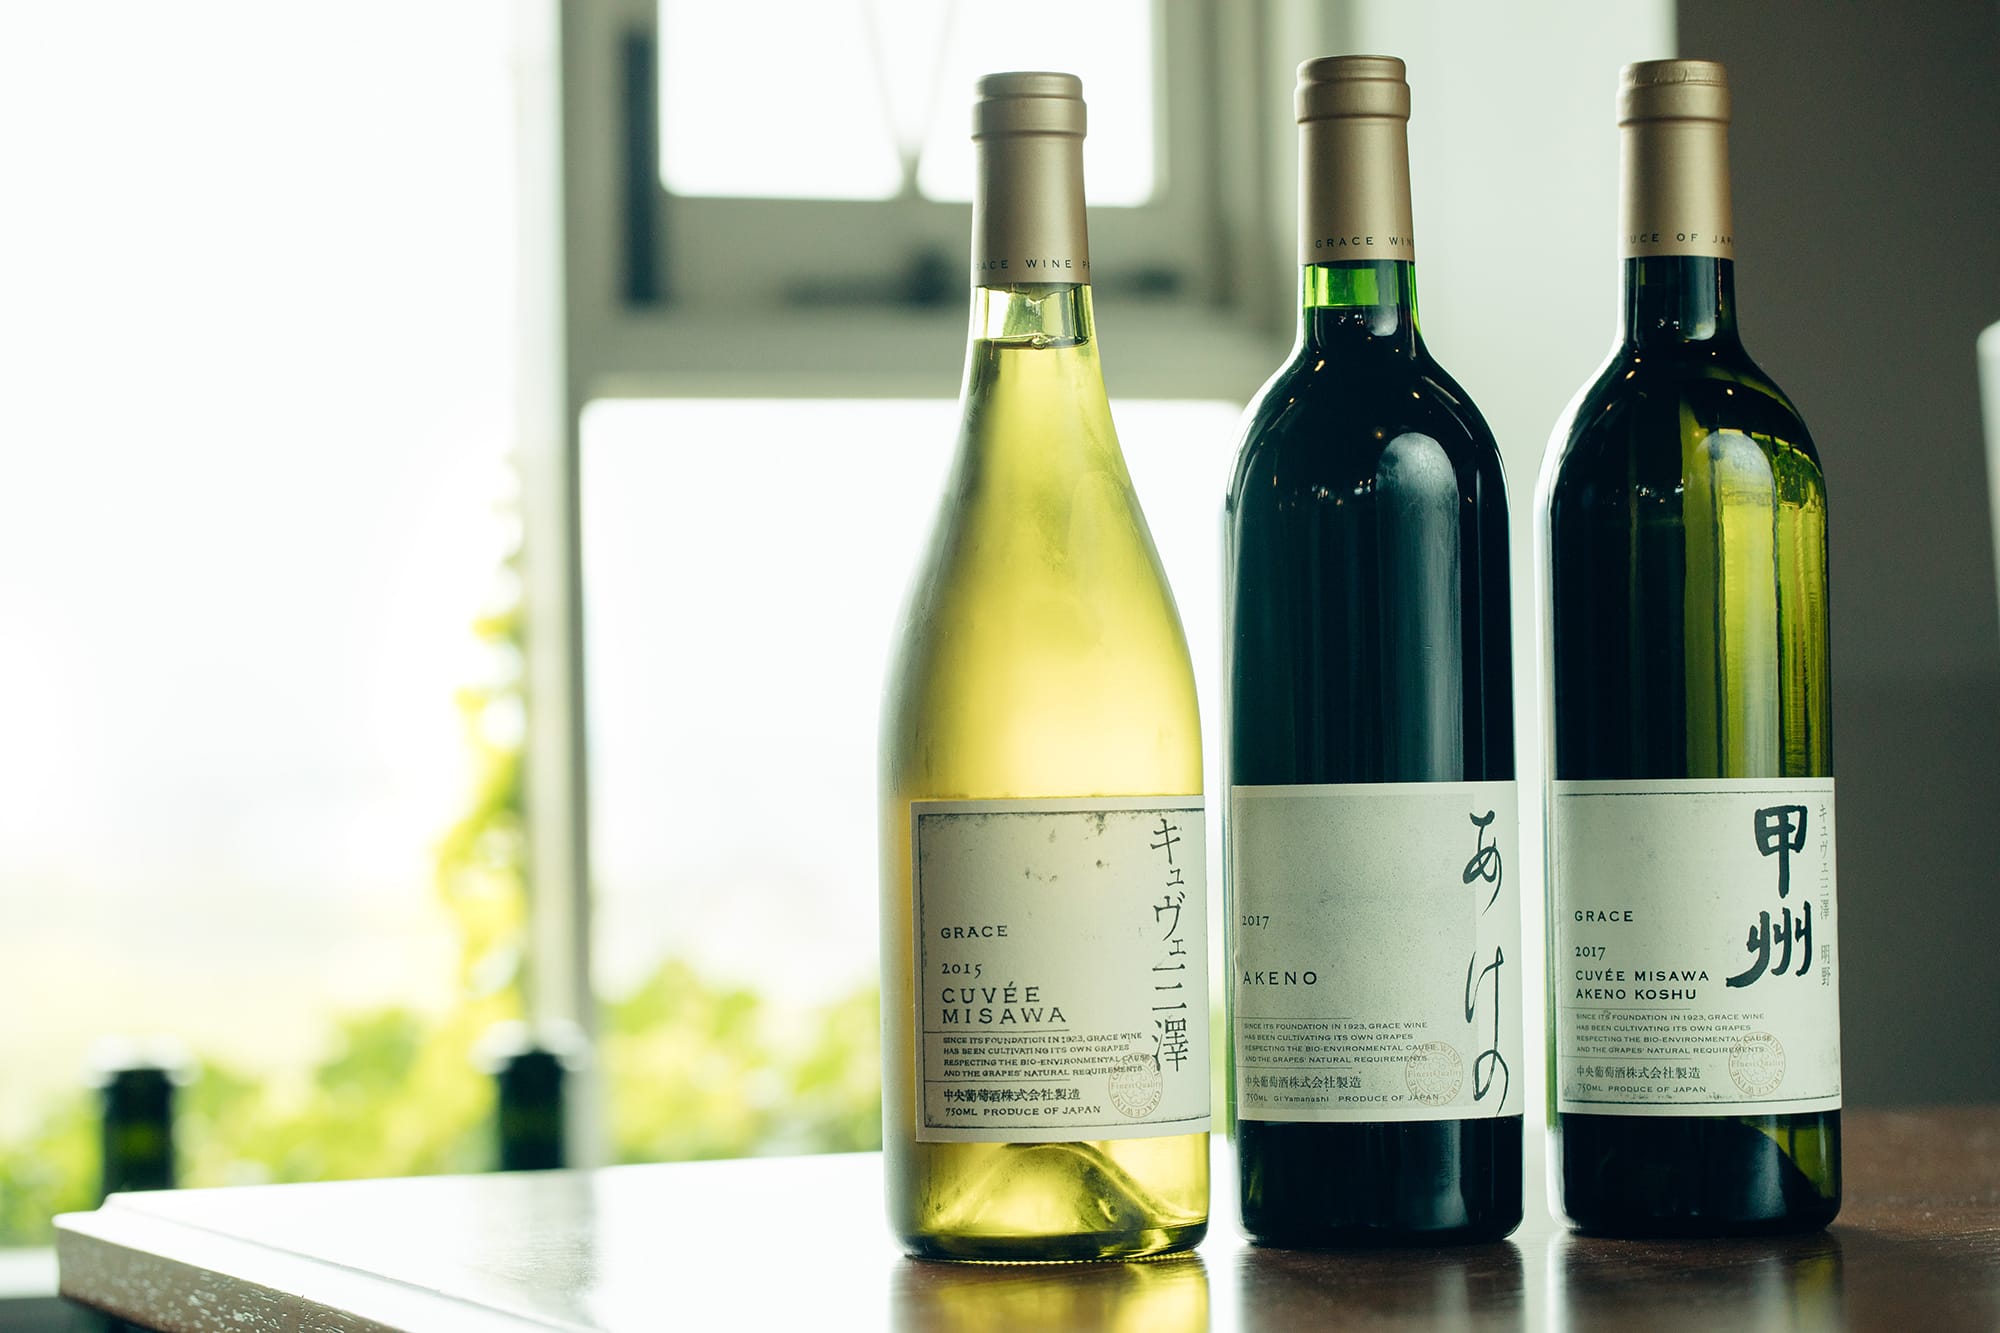 （右）2014年のDWWAで金賞を受賞したものと同じ「キュヴェ三澤 明野甲州」。（中央）新登場の「あけの」。現在、赤ワインは品種よりも産地の個性を表現する方向で、三澤農場の最高峰「キュヴェ三澤」のセカンドラベルの役割を果たす。メルロー、カベルネ・ソーヴィニヨン、カベルネ・フラン、プティ・ヴェルドをブレンドした、ボルドースタイルの赤。（左）90年代から高い評価を得る「キュヴェ三澤」の白。シャルドネ100パーセント。全てラベルデザインはグラフィックデザイナーの原研哉によるもの。